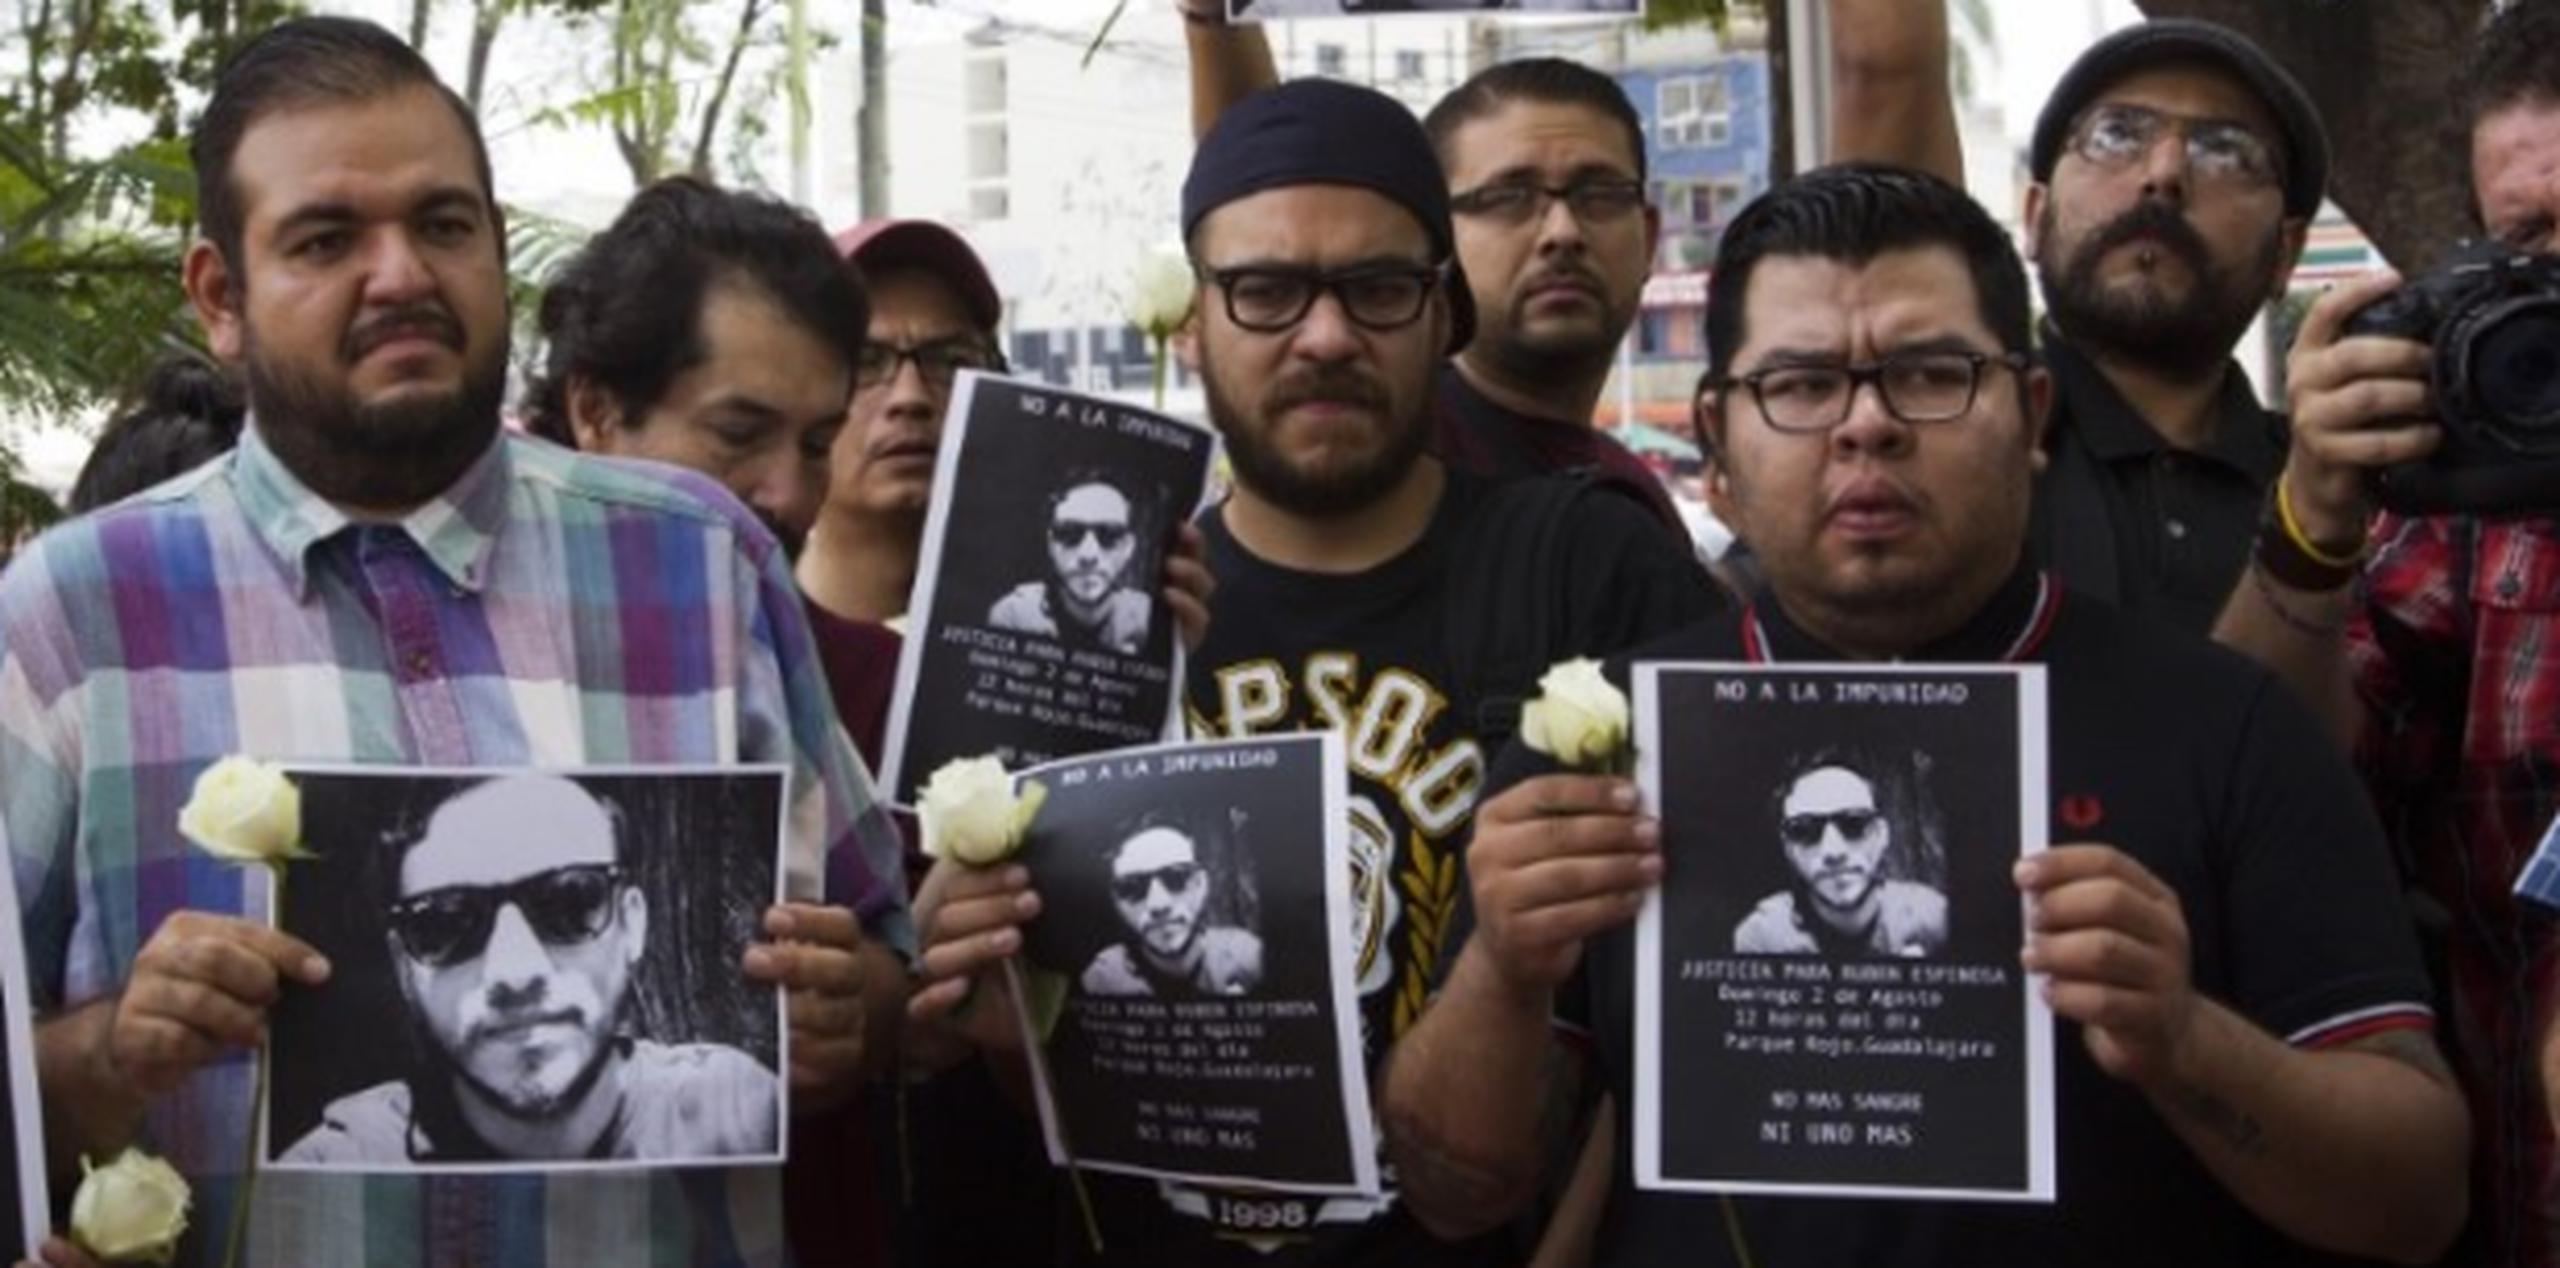 Fotoperiodistas mexicanos realizan una manifestación contra la violencia con flores y fotos de su colega asesinado. (AFP)